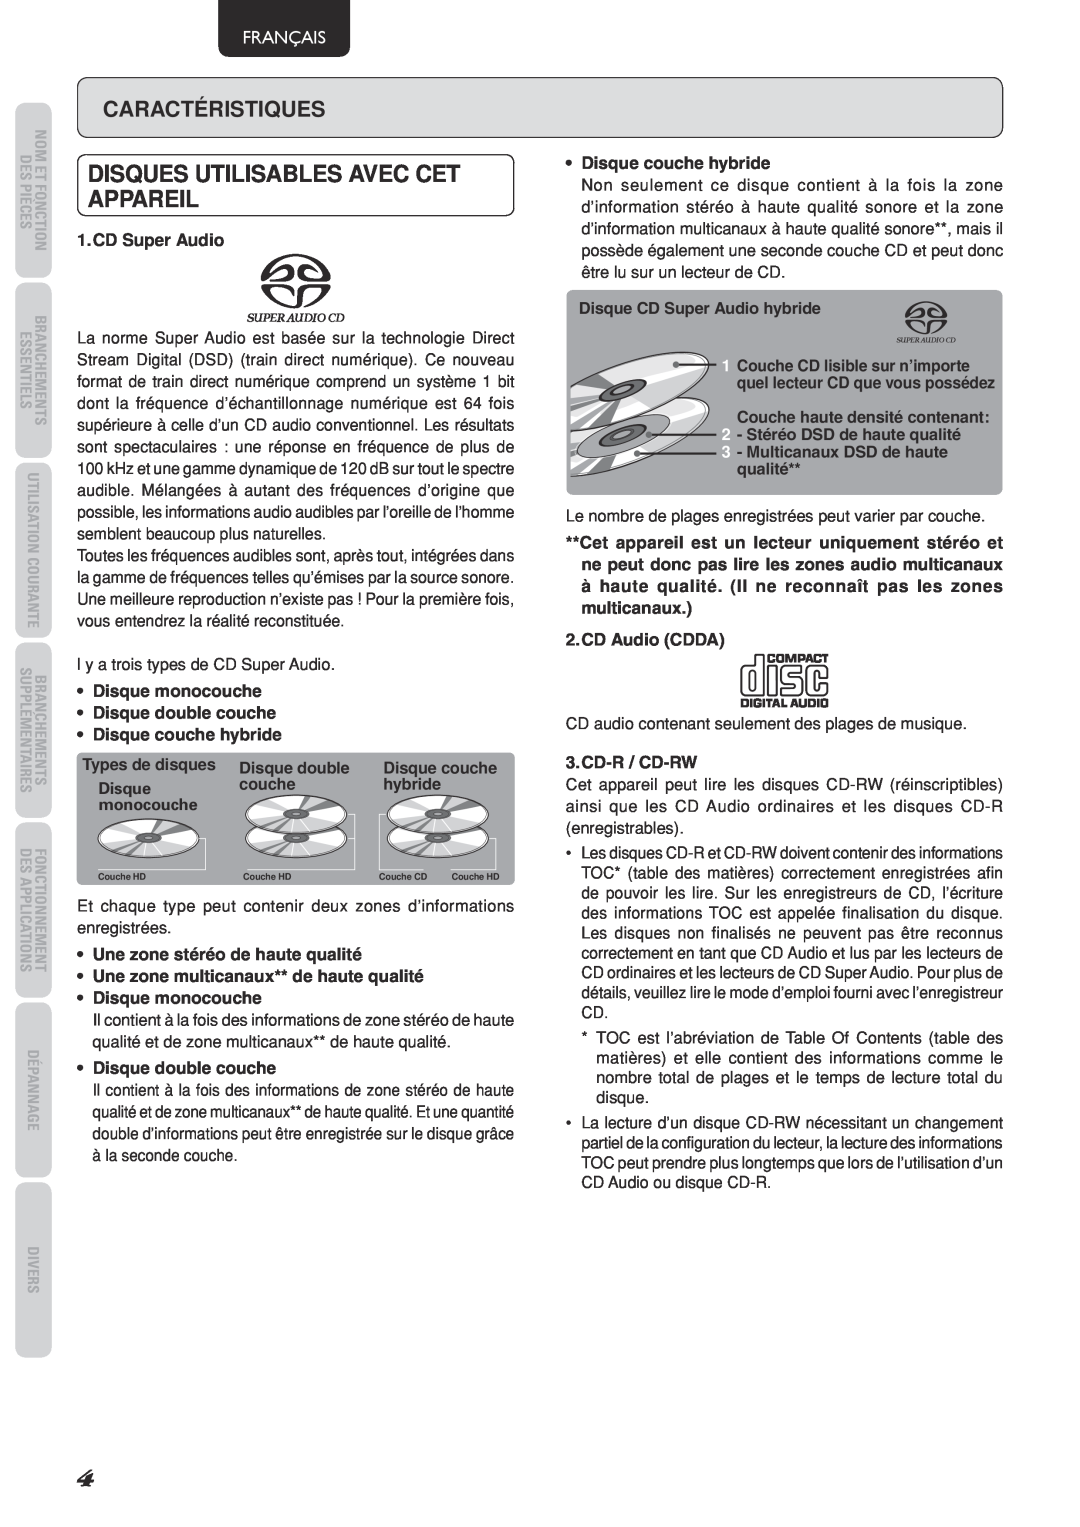 Marantz SA-15S2 manual Disques utilisables avec cet appareil, Caractéristiques, Français 